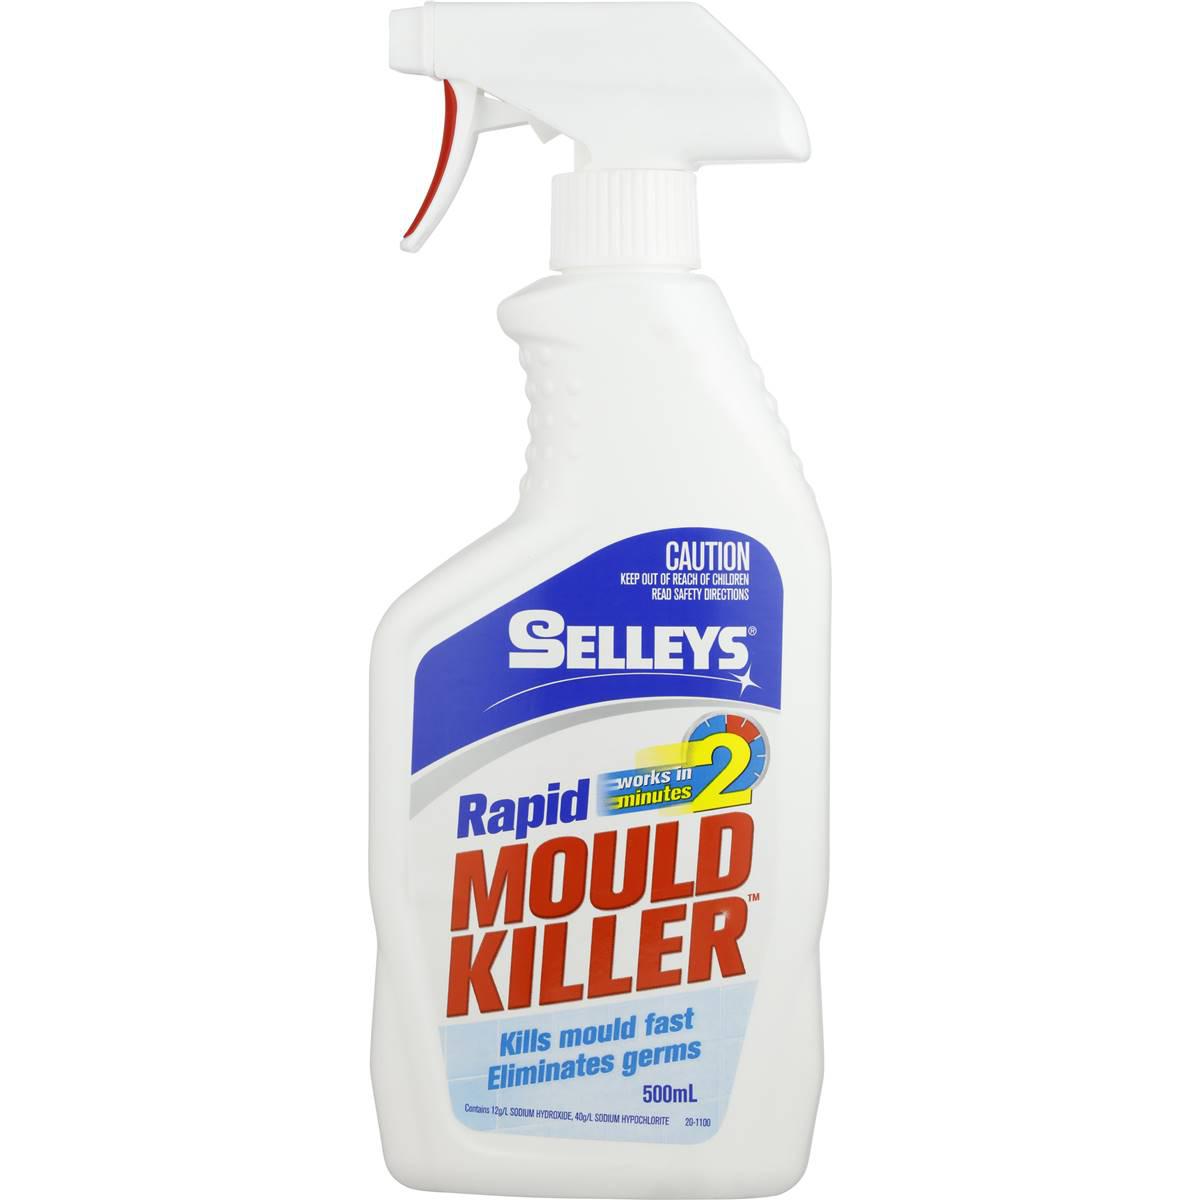 Selleys Bathroom Cleaner Rapid Mould Killer Trigger 500ml